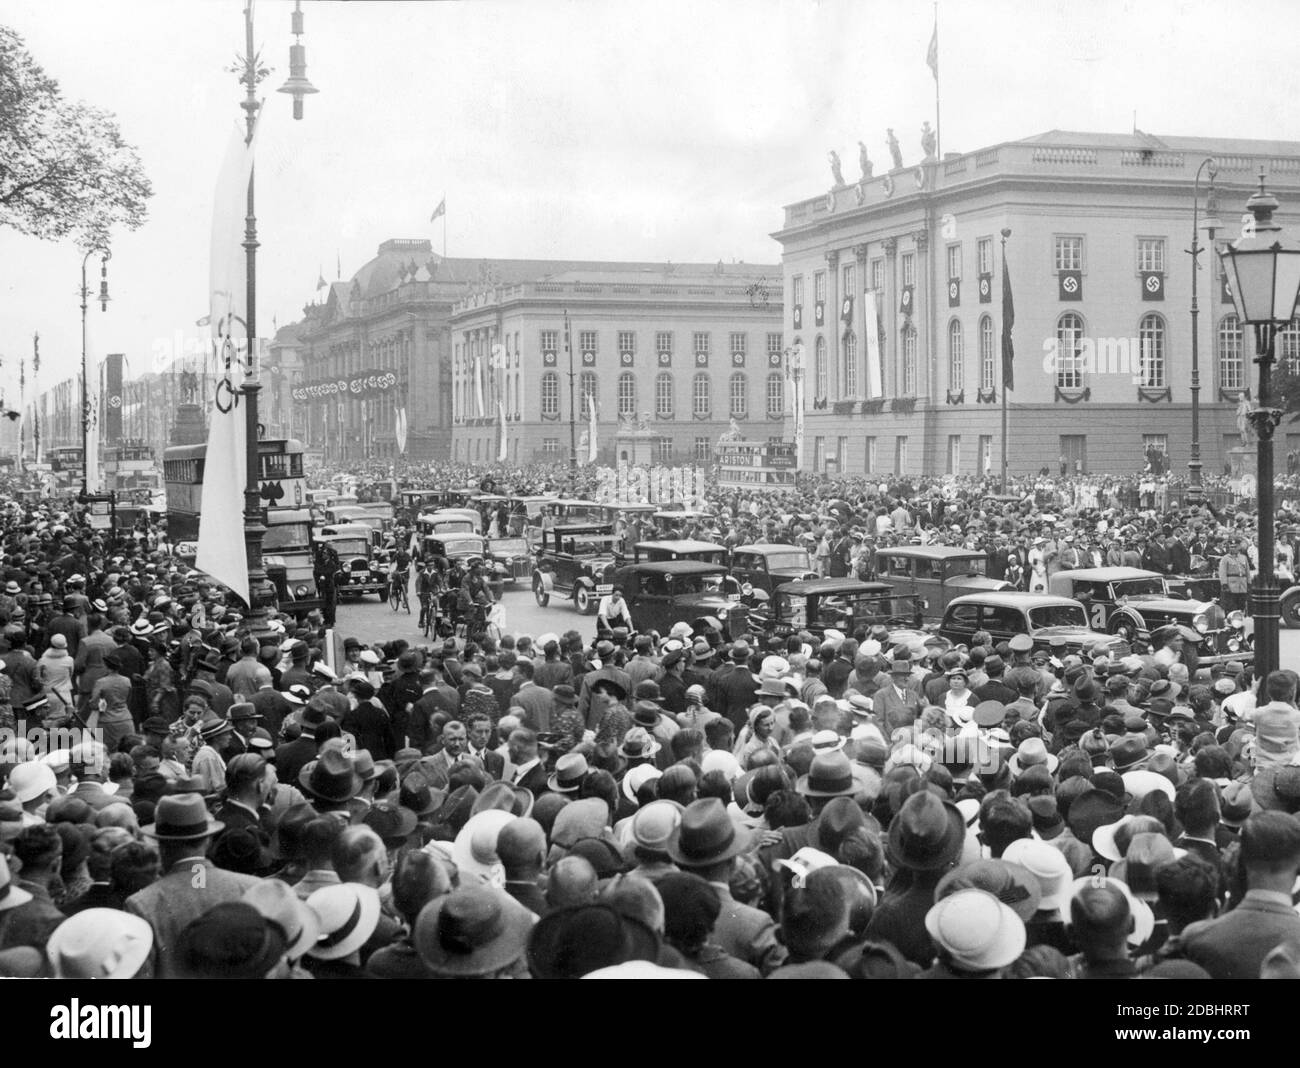 Durante las Olimpiadas de verano de agosto de 1936, multitudes se reunieron en el bulevar Unter den Linden de Berlín, en la zona de la Universidad de Humboldt (derecha) y la Biblioteca Estatal (izquierda detrás). Foto de stock